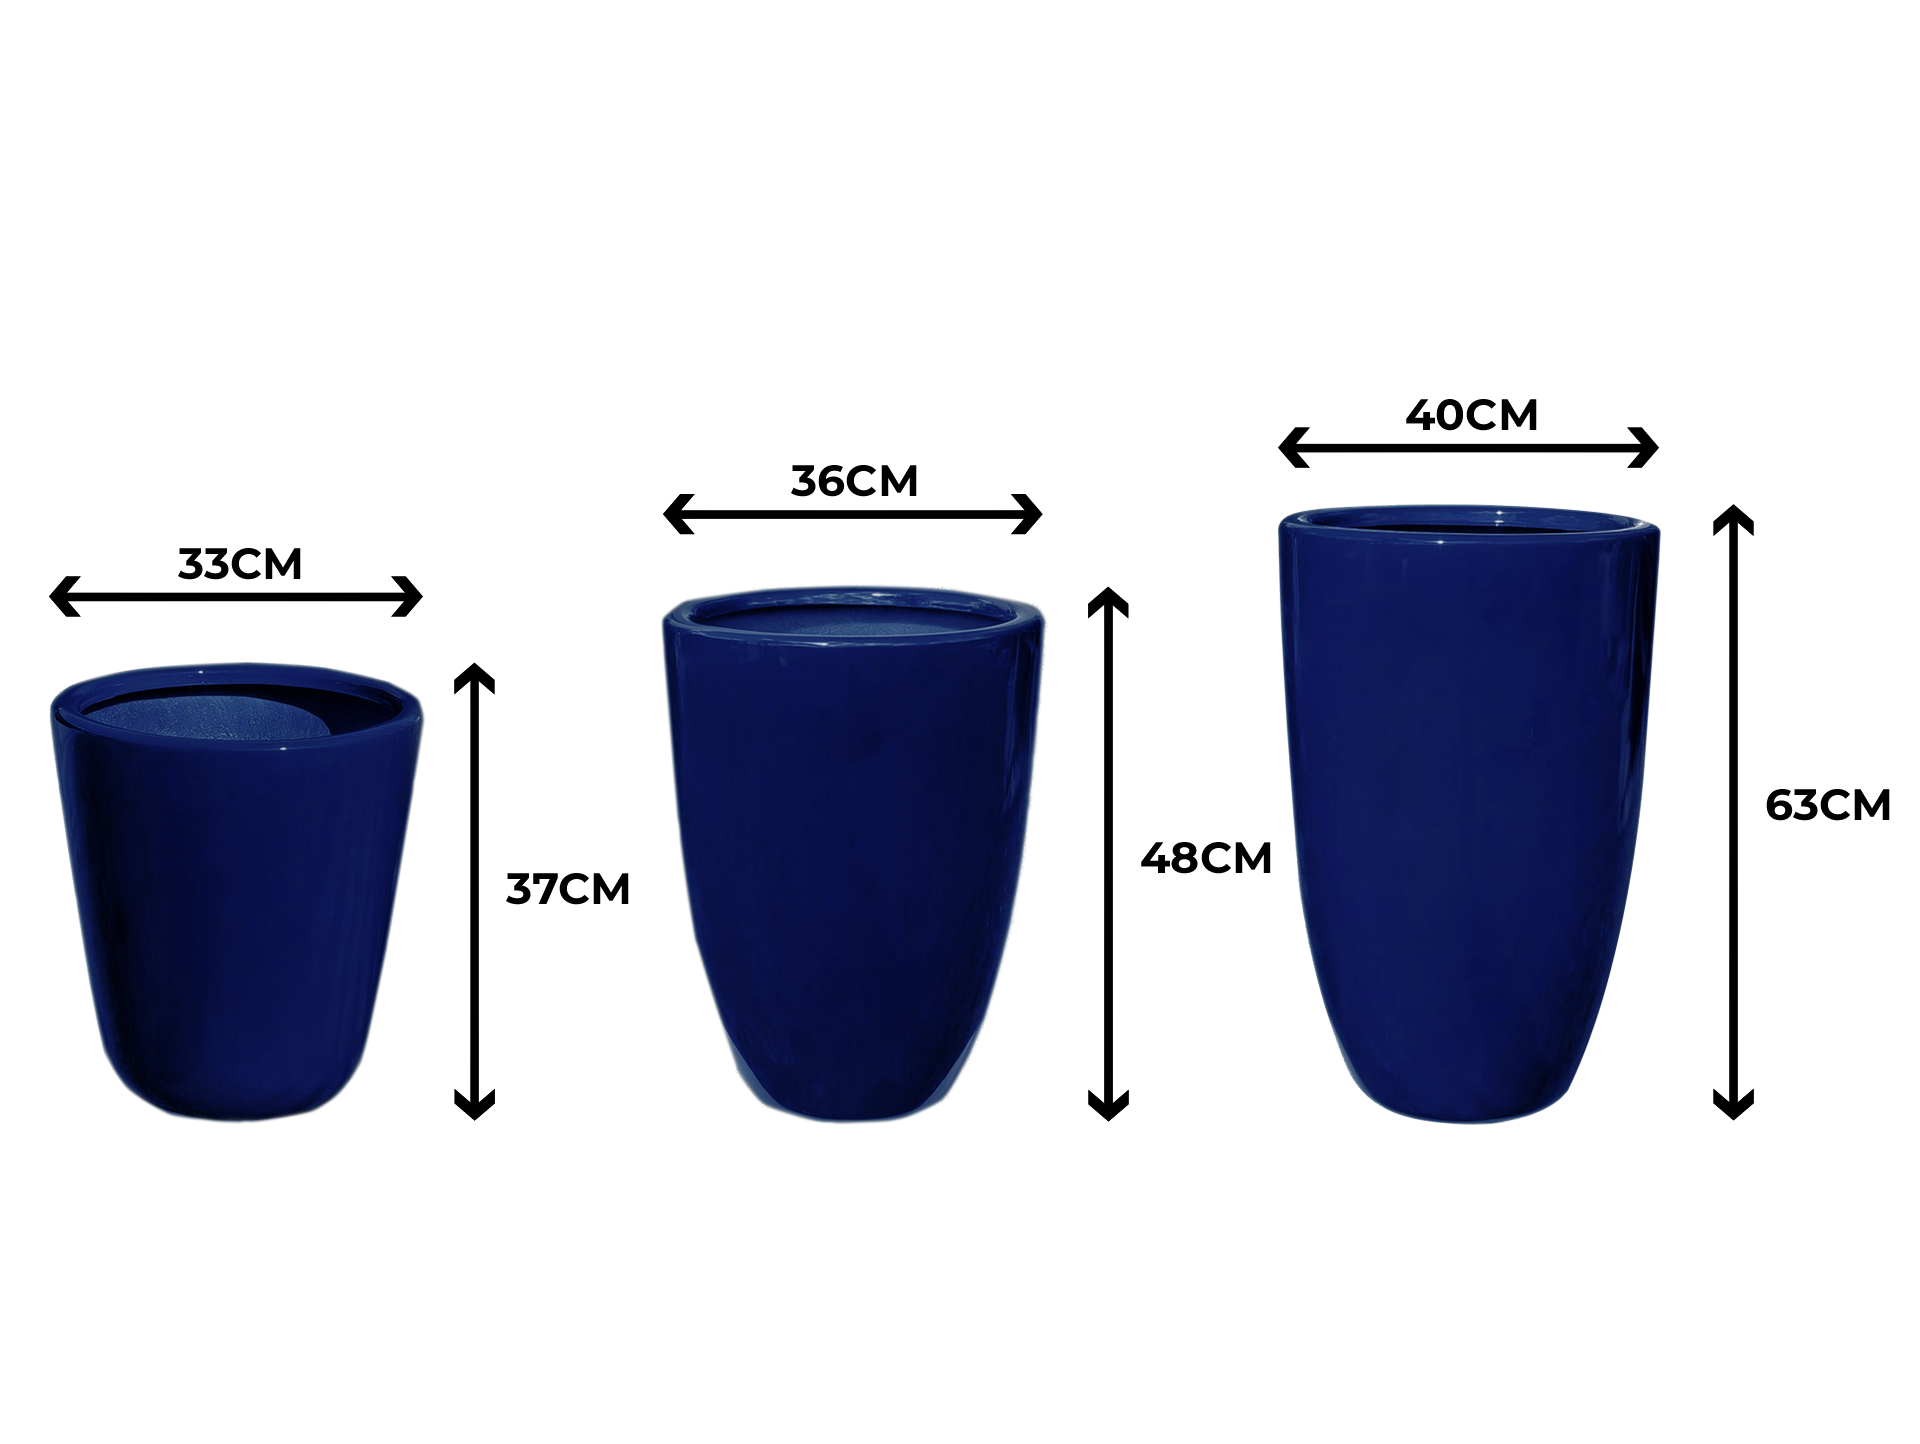 Trio de Vasos Azul Fibra de Vidro Estilo Vietnamita 37, 48, 63cm - 2